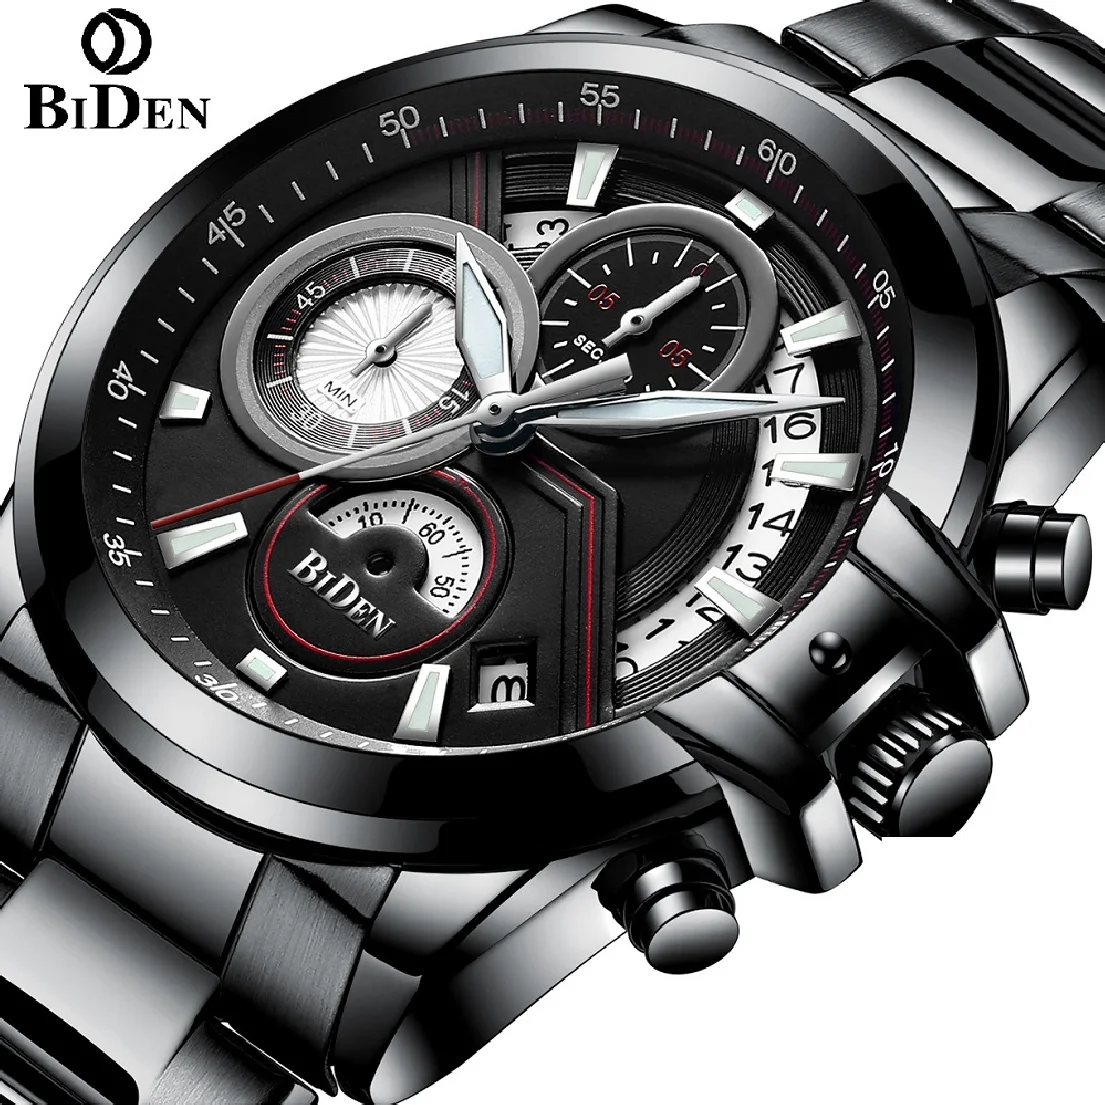 

Часы Biden Мужские кварцевые аналоговые, люксовые Брендовые спортивные светящиеся в стиле милитари, с хронографом из нержавеющей стали